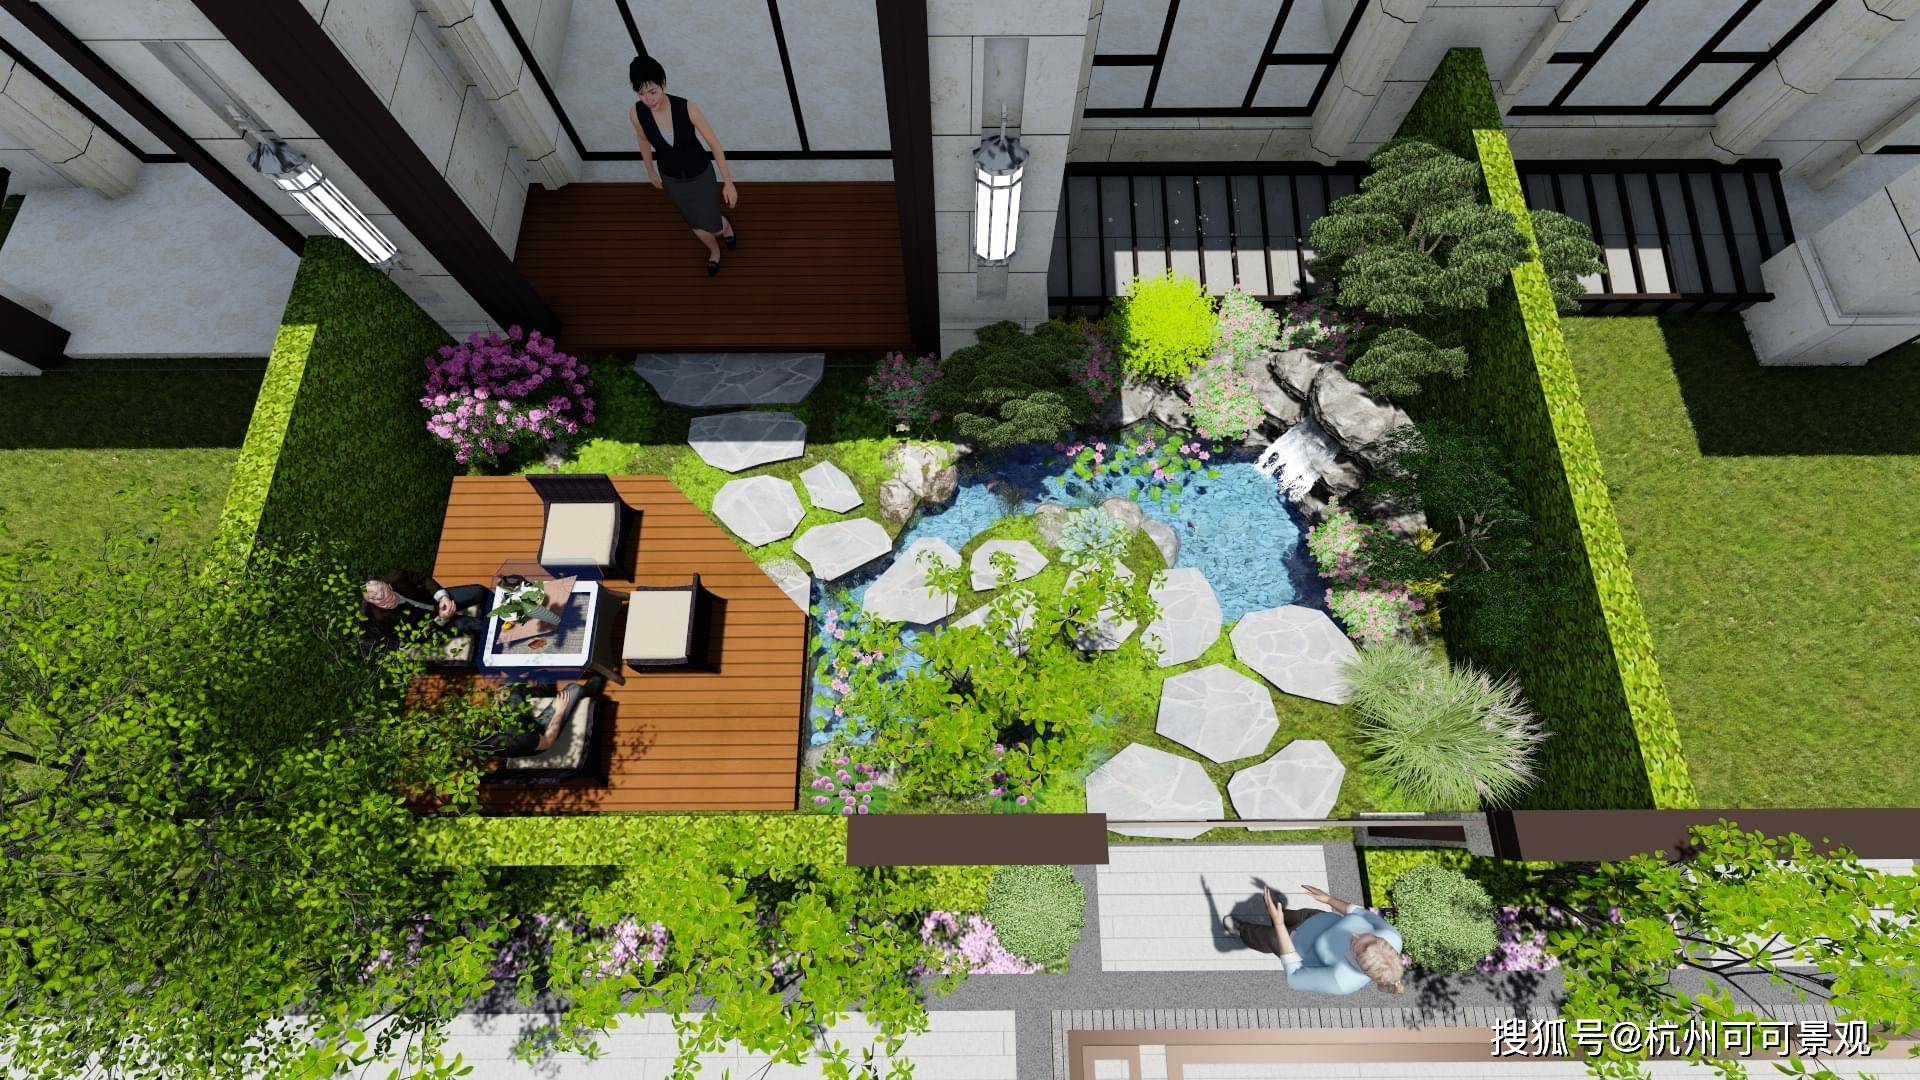 杭州庭院设计:4个小技巧,打造与自然融为一体的院子,堪比世外桃源!